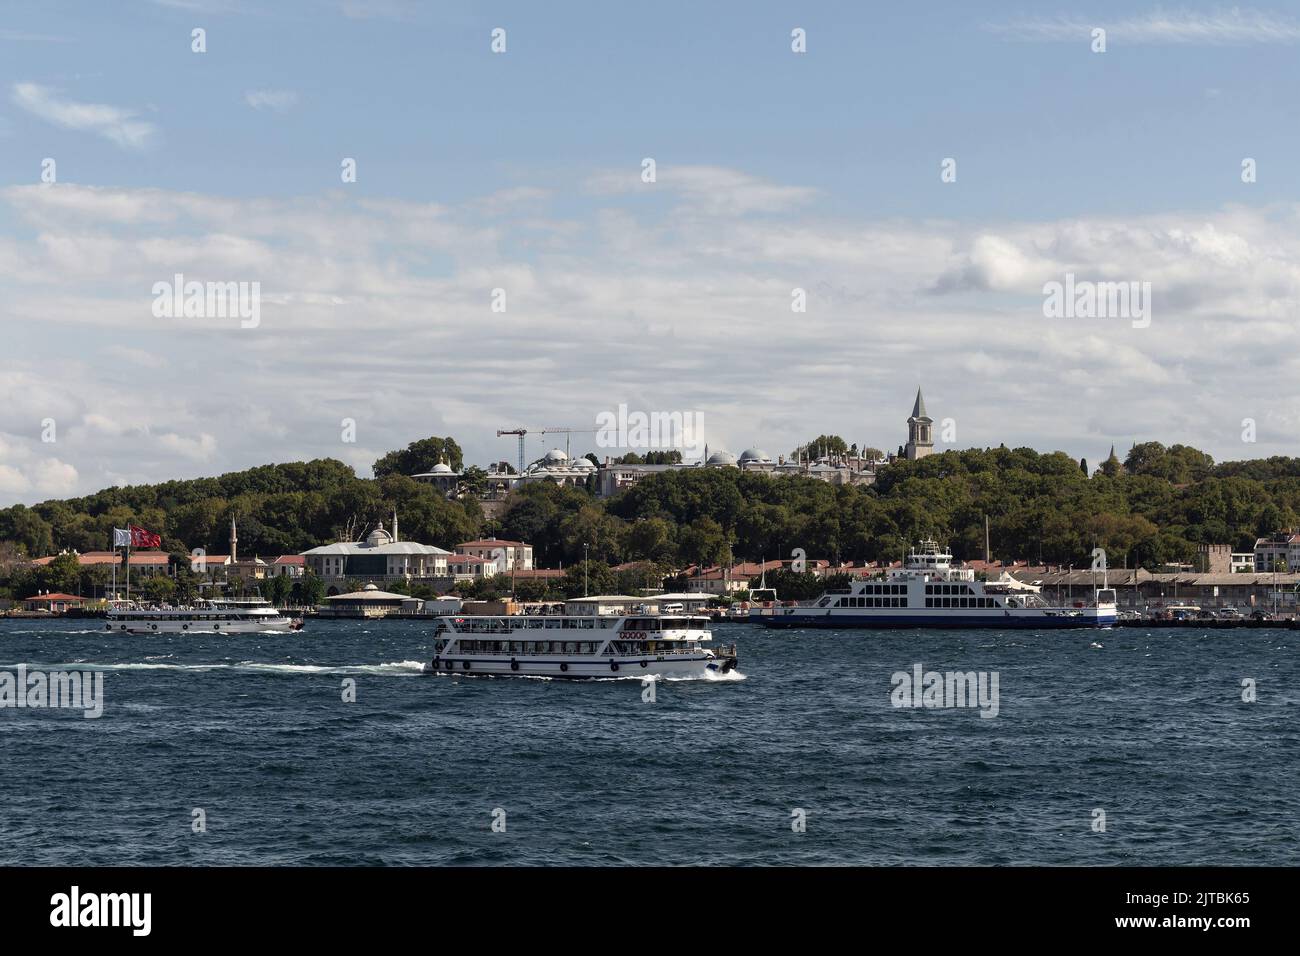 Vista de los barcos turísticos del Bósforo que pasan delante del Palacio Topkapi en Estambul. Es un soleado día de verano. Foto de stock